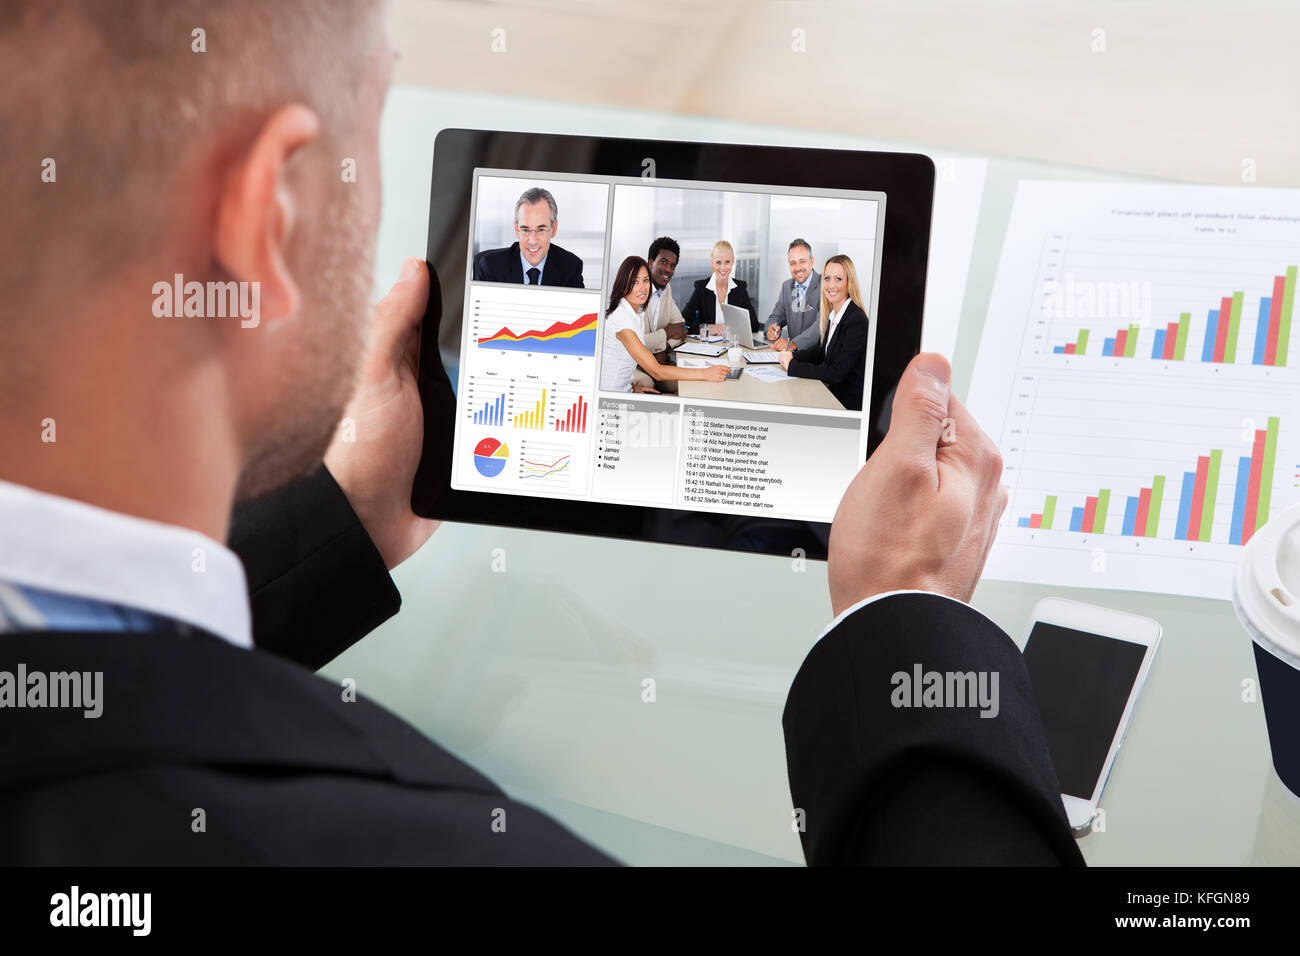 Imprenditore su un video o una chiamata in conferenza su il suo tablet con un'immagine di colleghi di lavoro in occasione di un incontro e grafici a barre sullo schermo Foto Stock